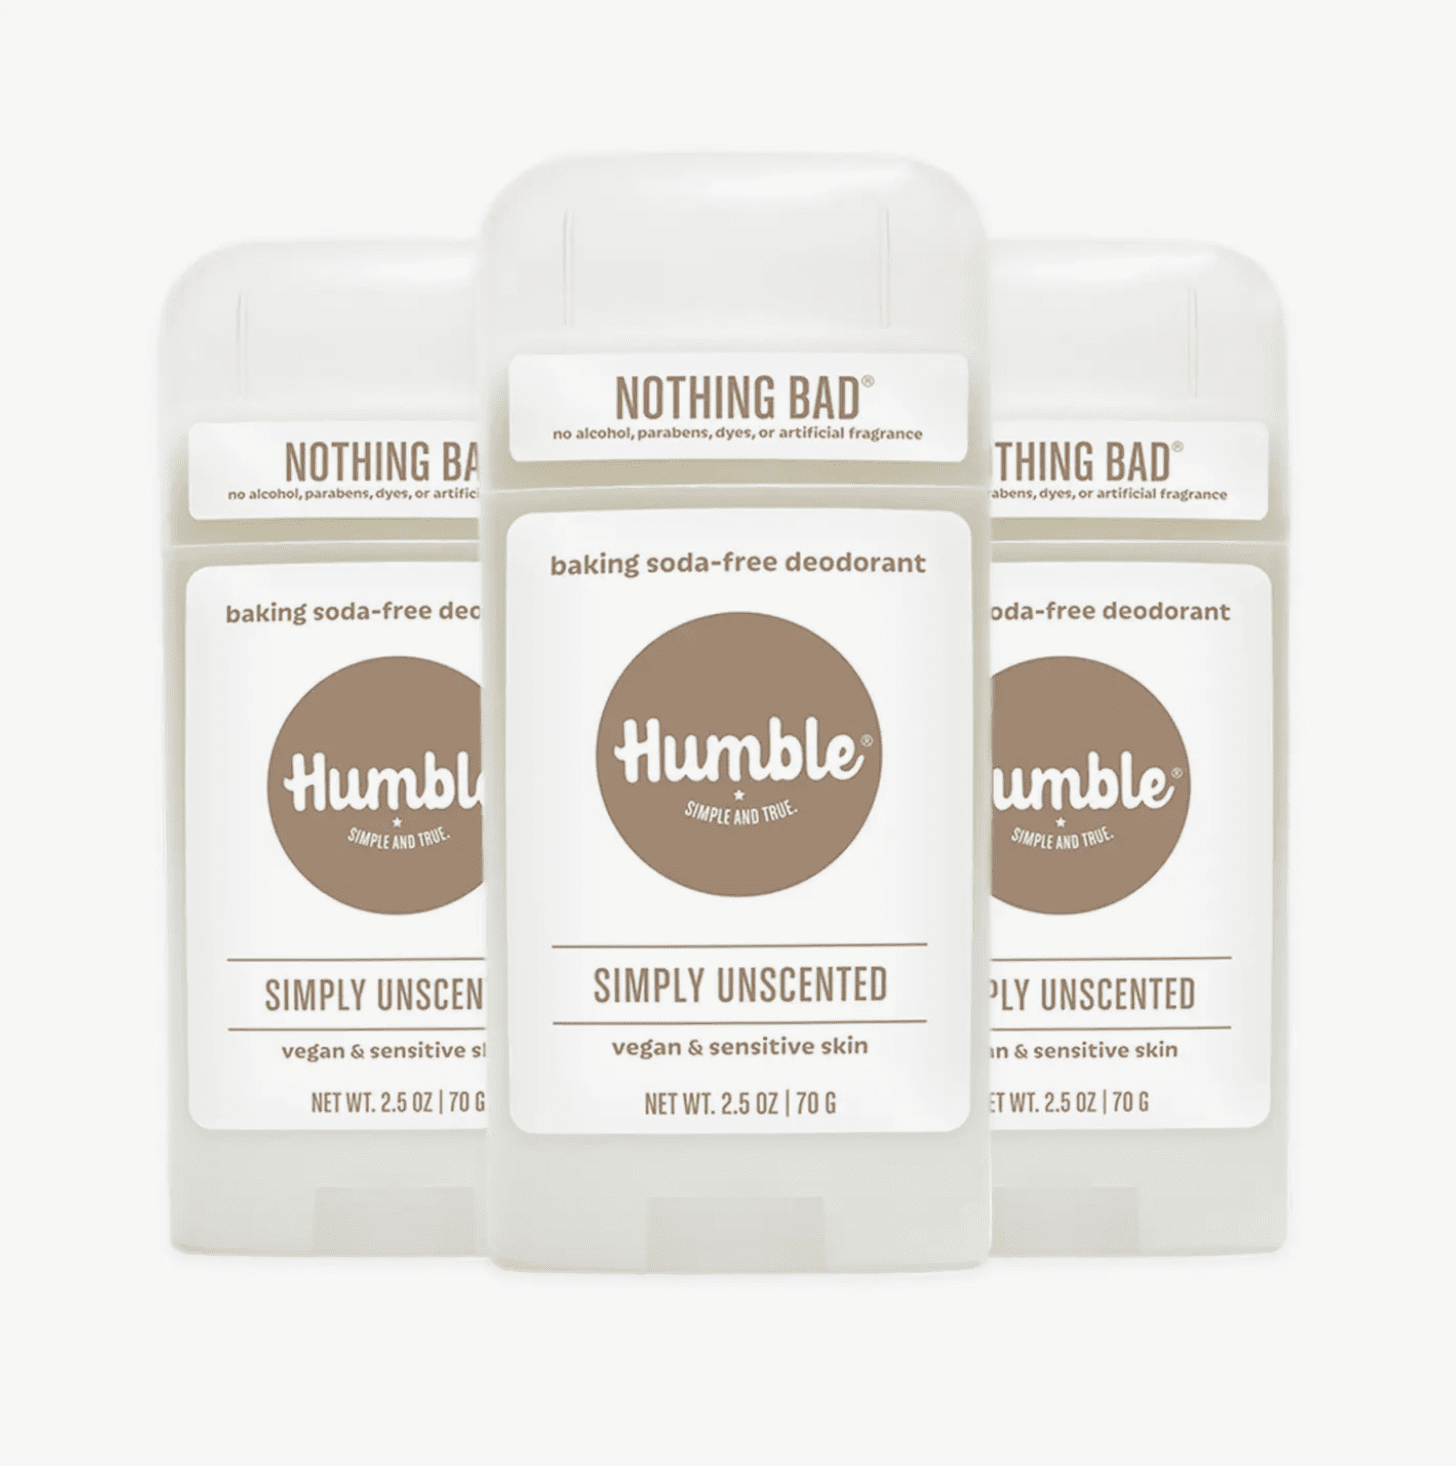 Sensitive Skin/Vegan Simply Unscented Humble Brand Deodorant